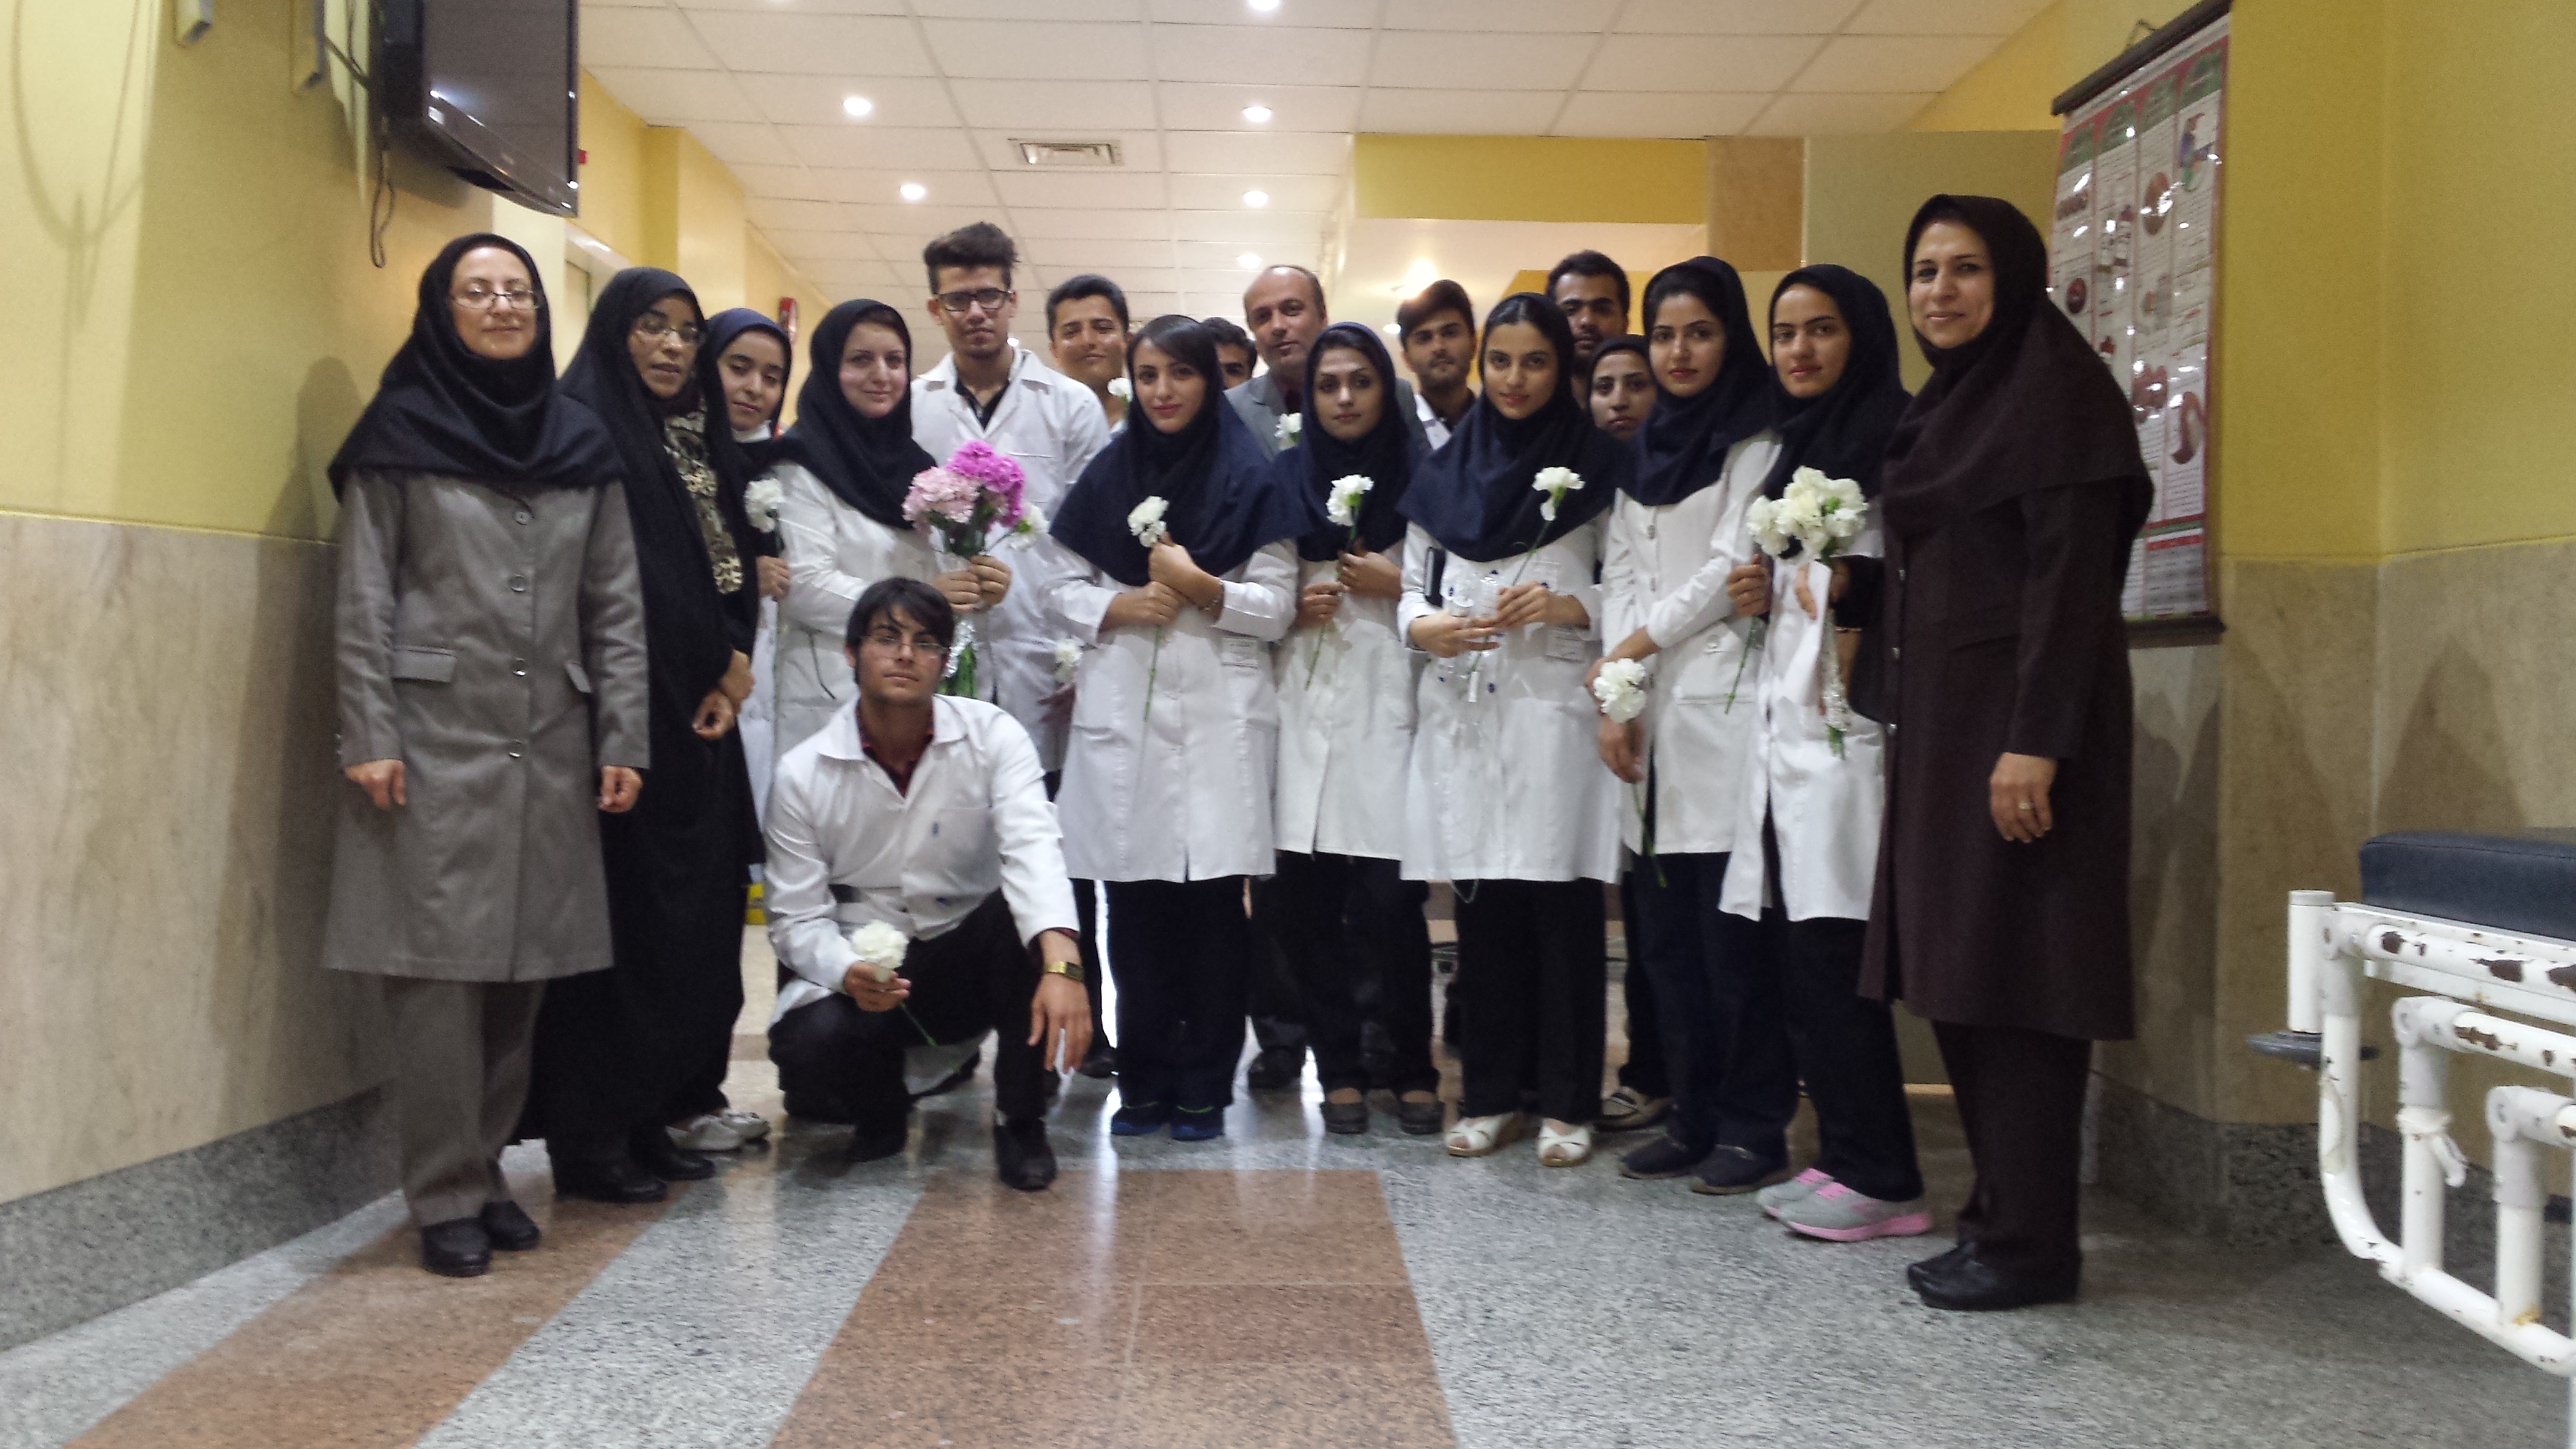 تجلیل بخشدار گرکن جنوبی زیباشهر از پرستاران مرکز درمانی زیباشهر